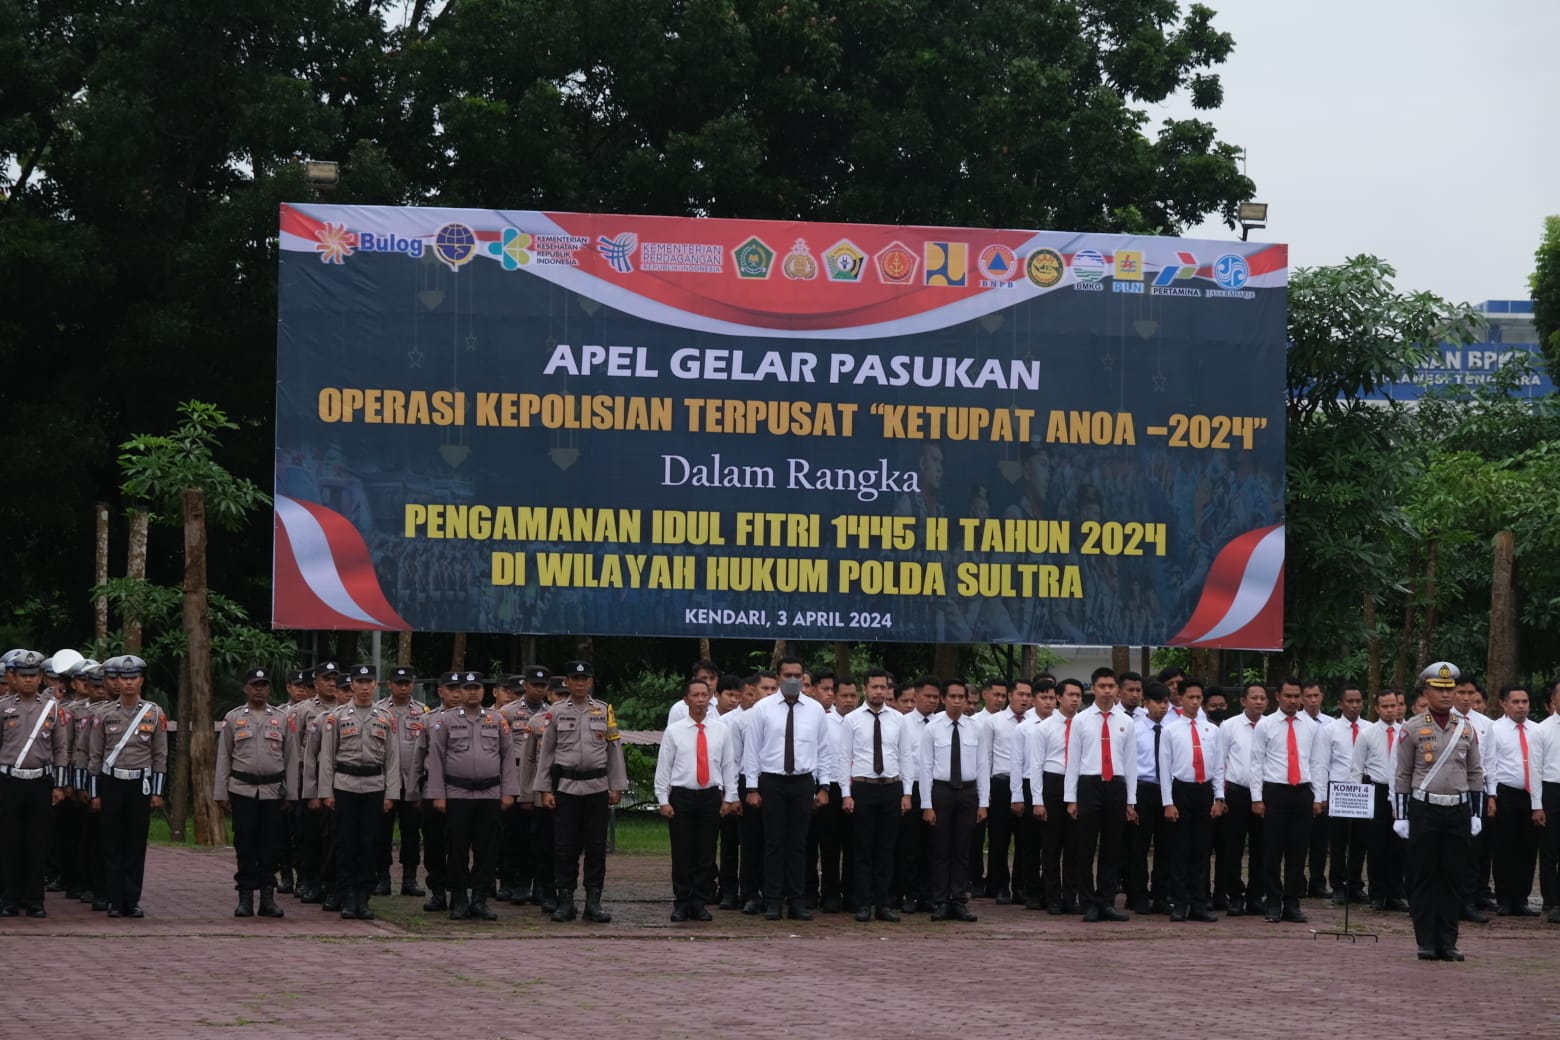 Apel Gelar Pasukan Operasi Ketupat Anoa 2024 Dalam Rangka Pengamanan Idul Fitri 1445 H